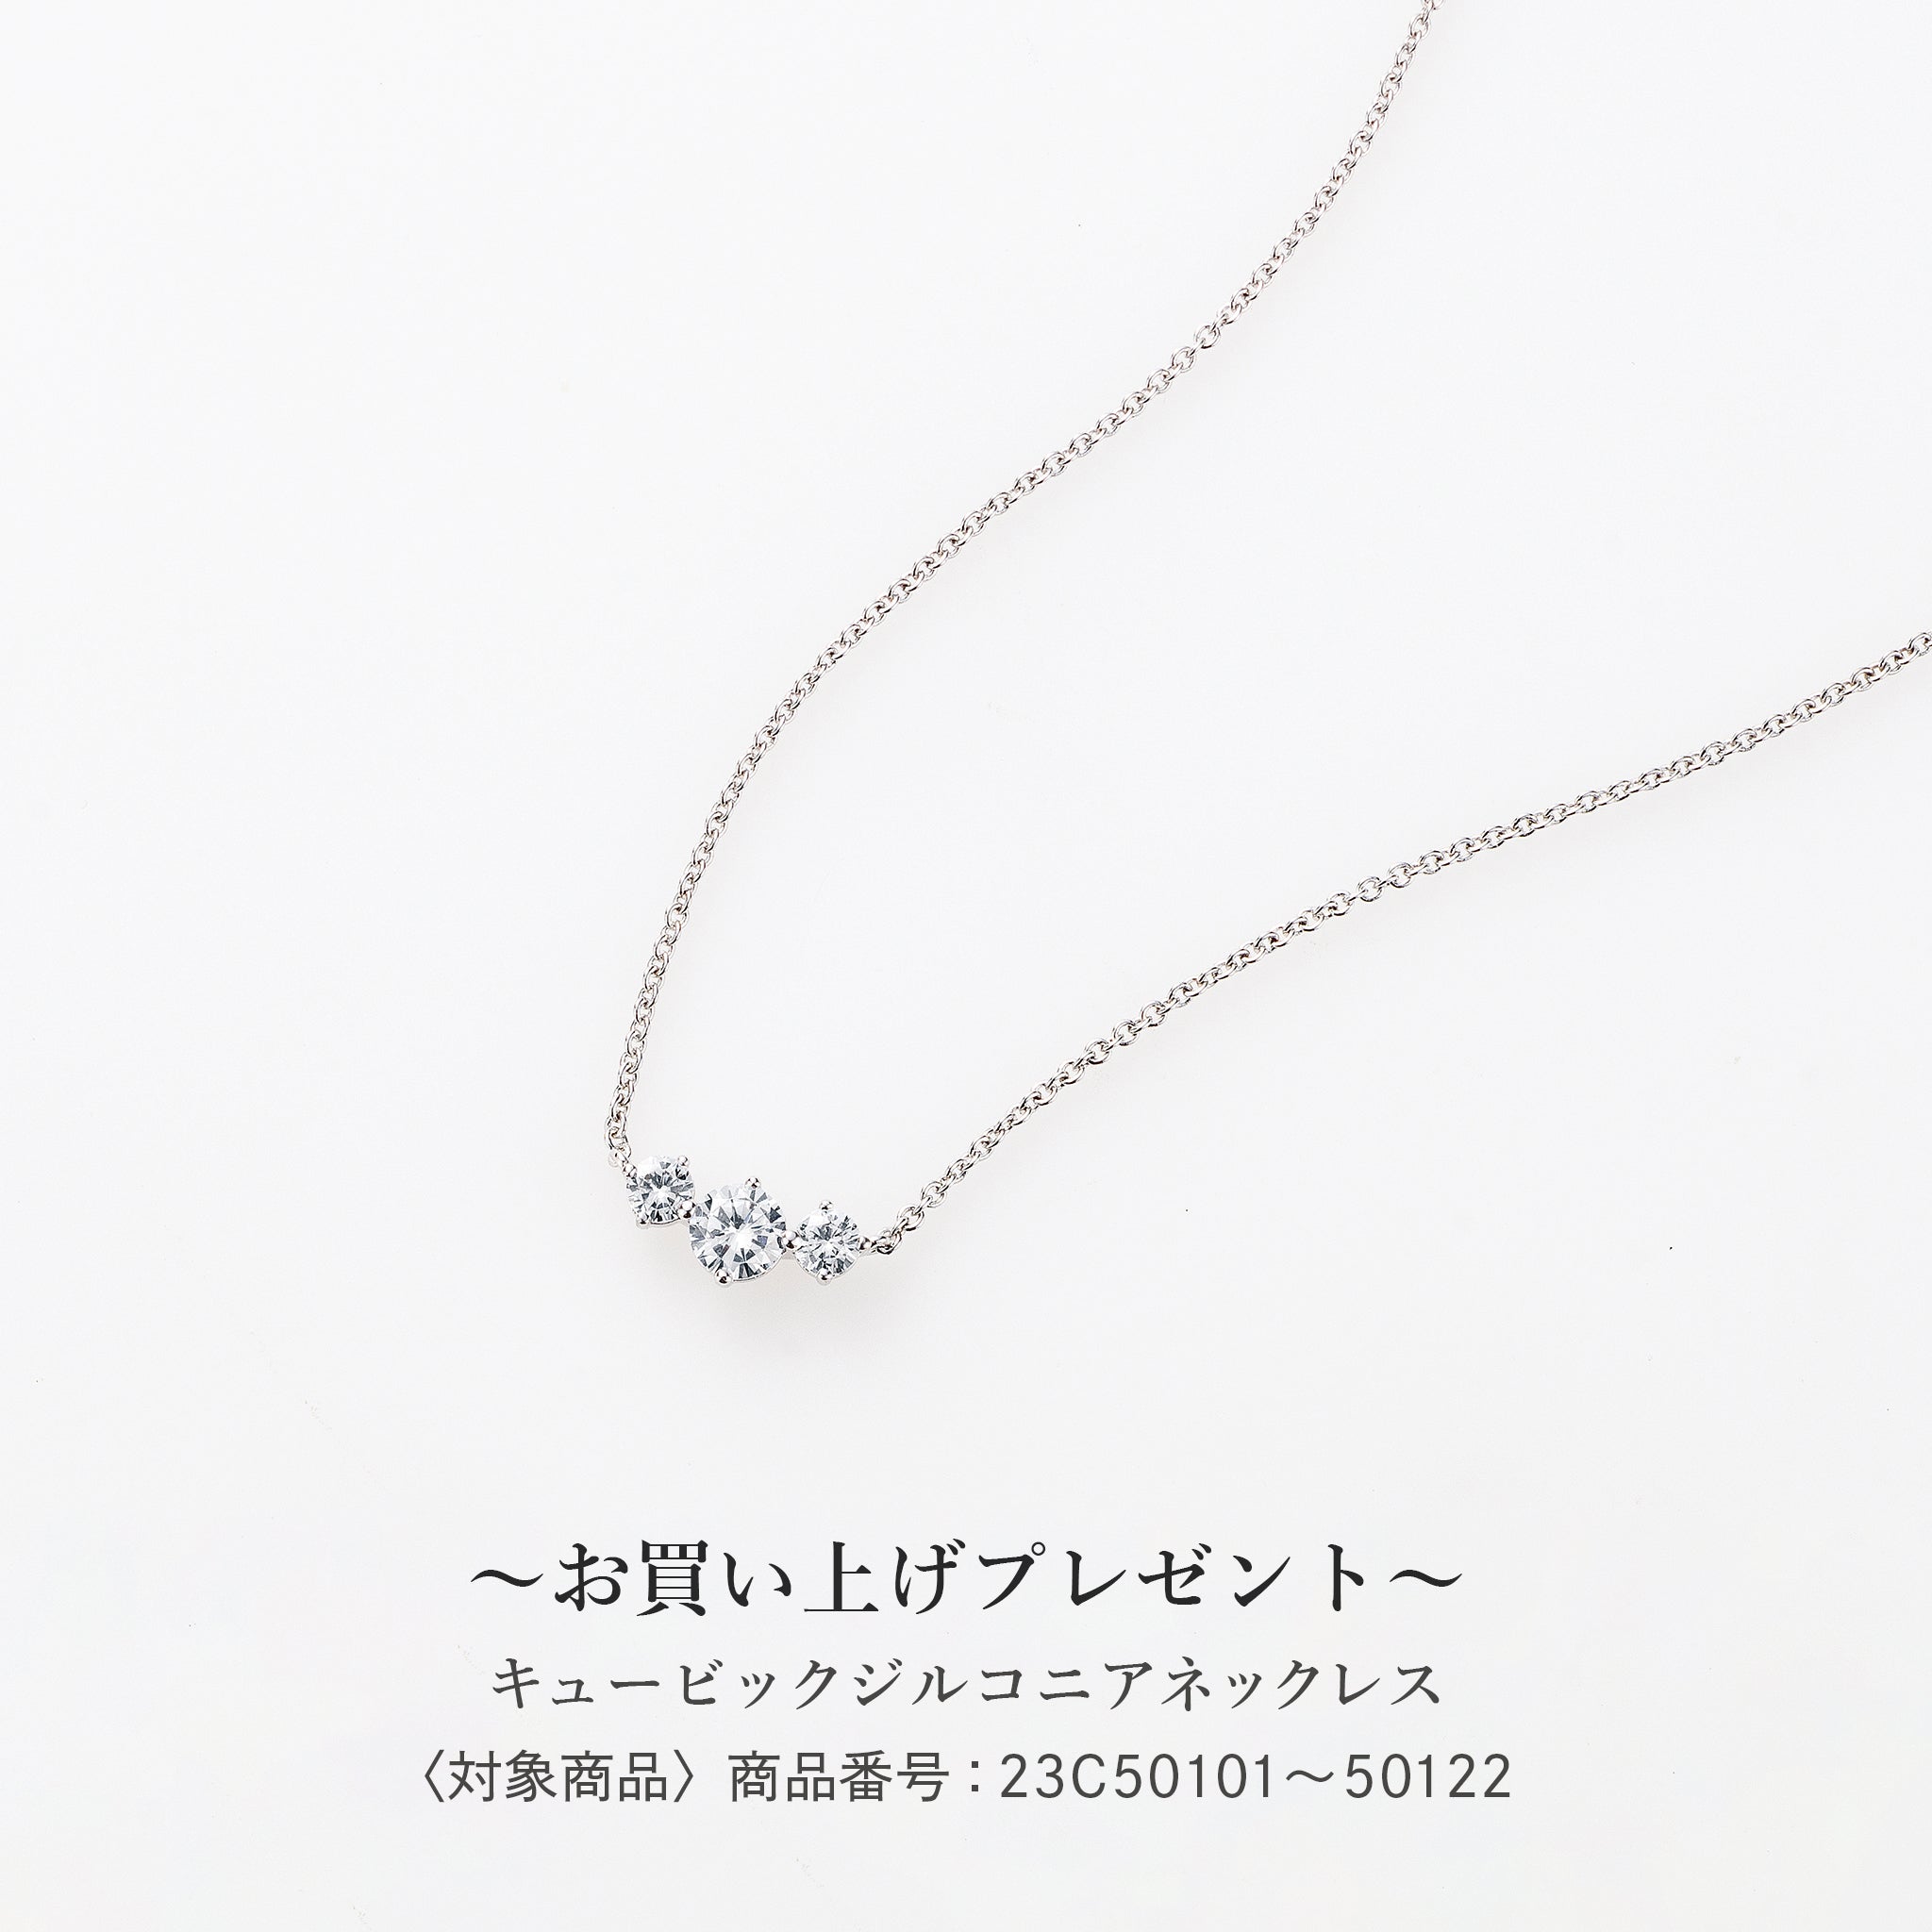 【新品】PT ダイヤモンド ネックレス 0.342CT D SI1 Good